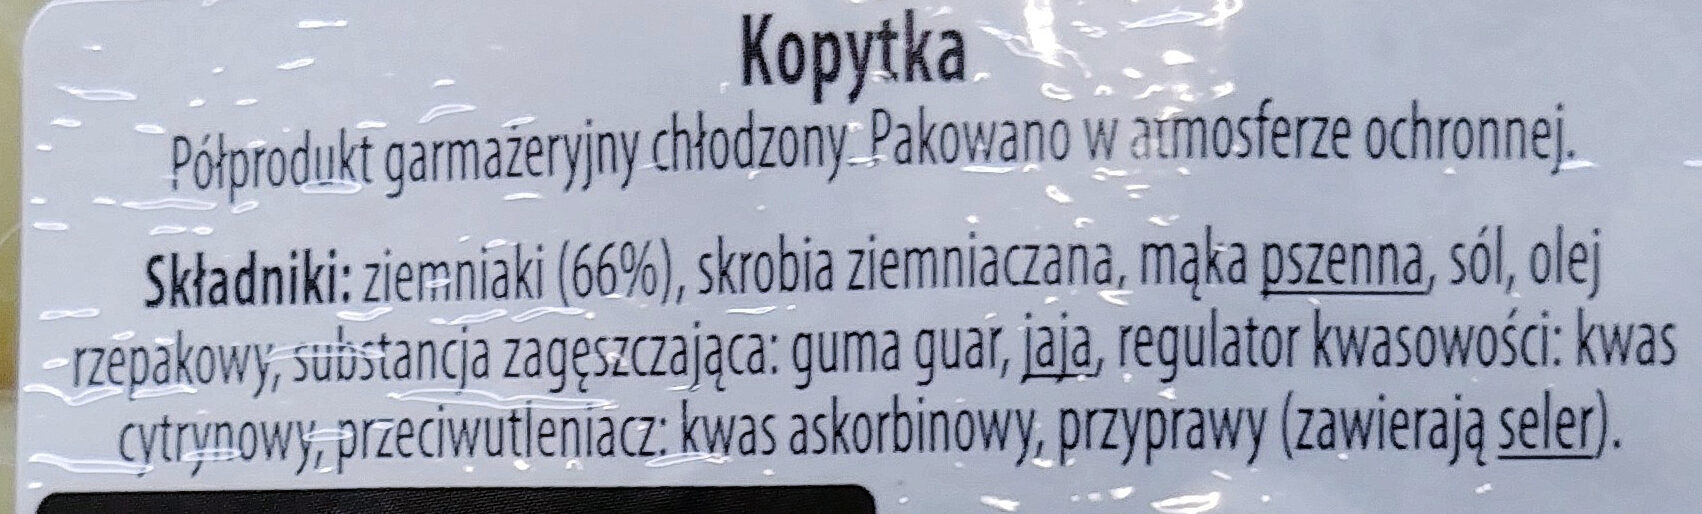 Kopytka - Ingredients - pl